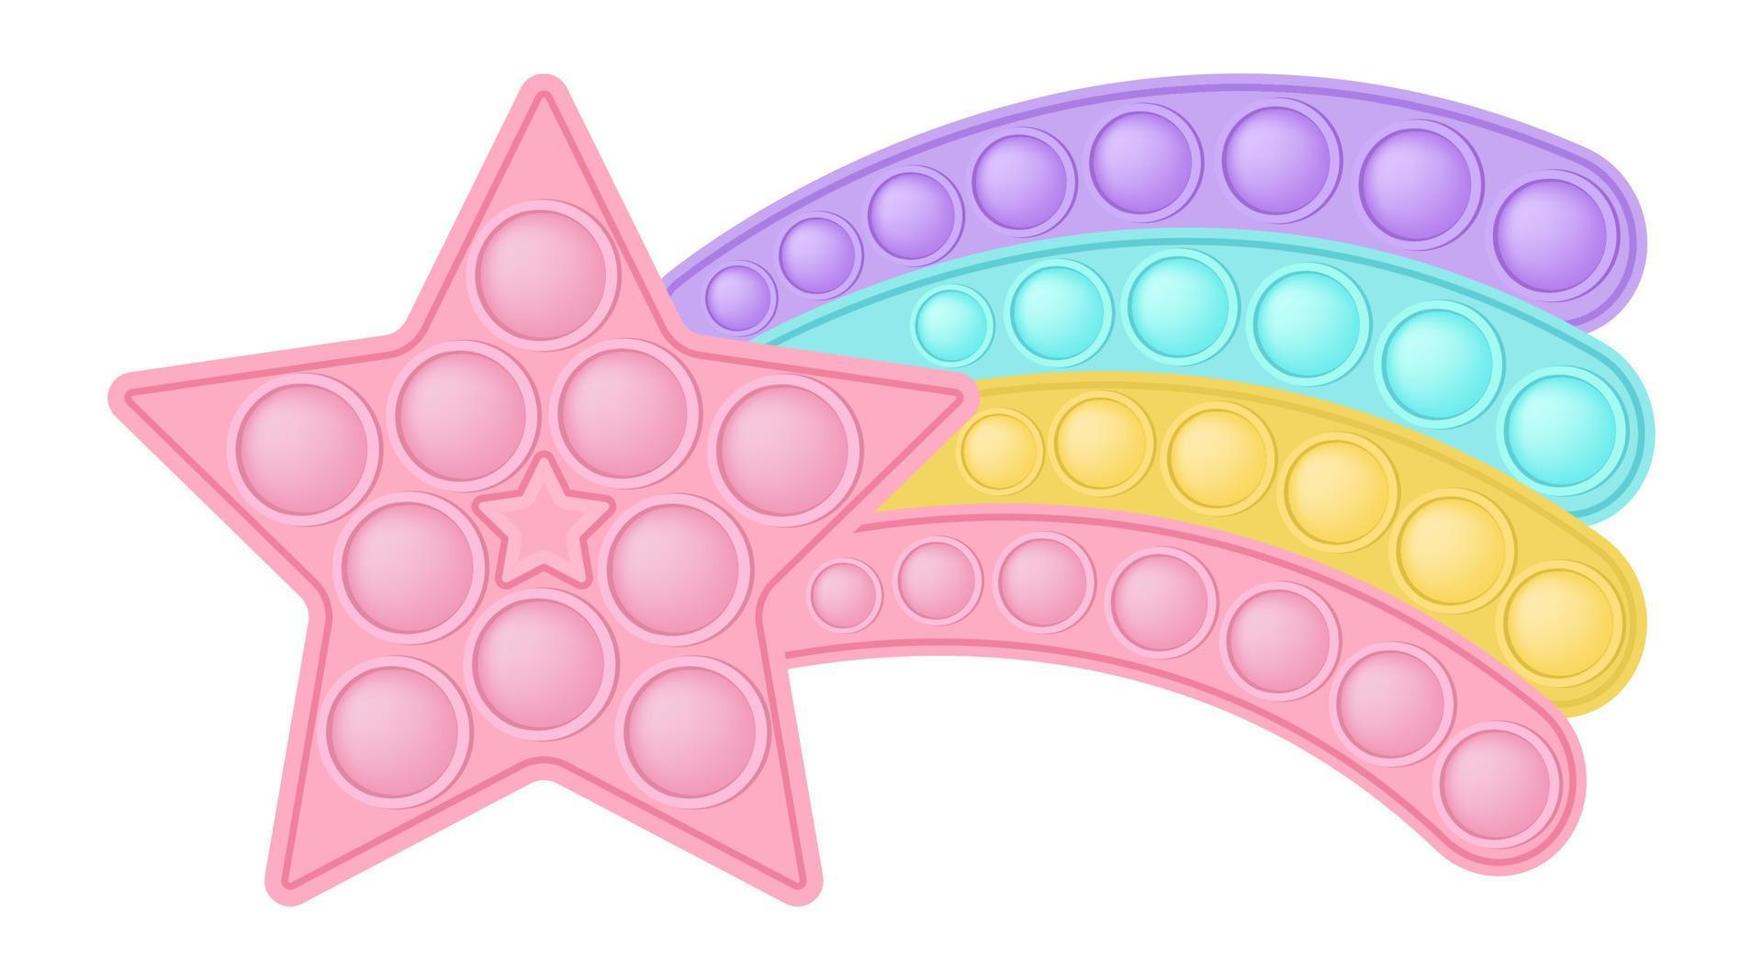 popping toy estrela rosa com uma cauda de arco-íris como um brinquedo de silicone para inquietações. brinquedo antiestresse viciante na cor rosa pastel. brinquedo de desenvolvimento sensorial de bolha para dedos de crianças. ilustração vetorial isolada vetor